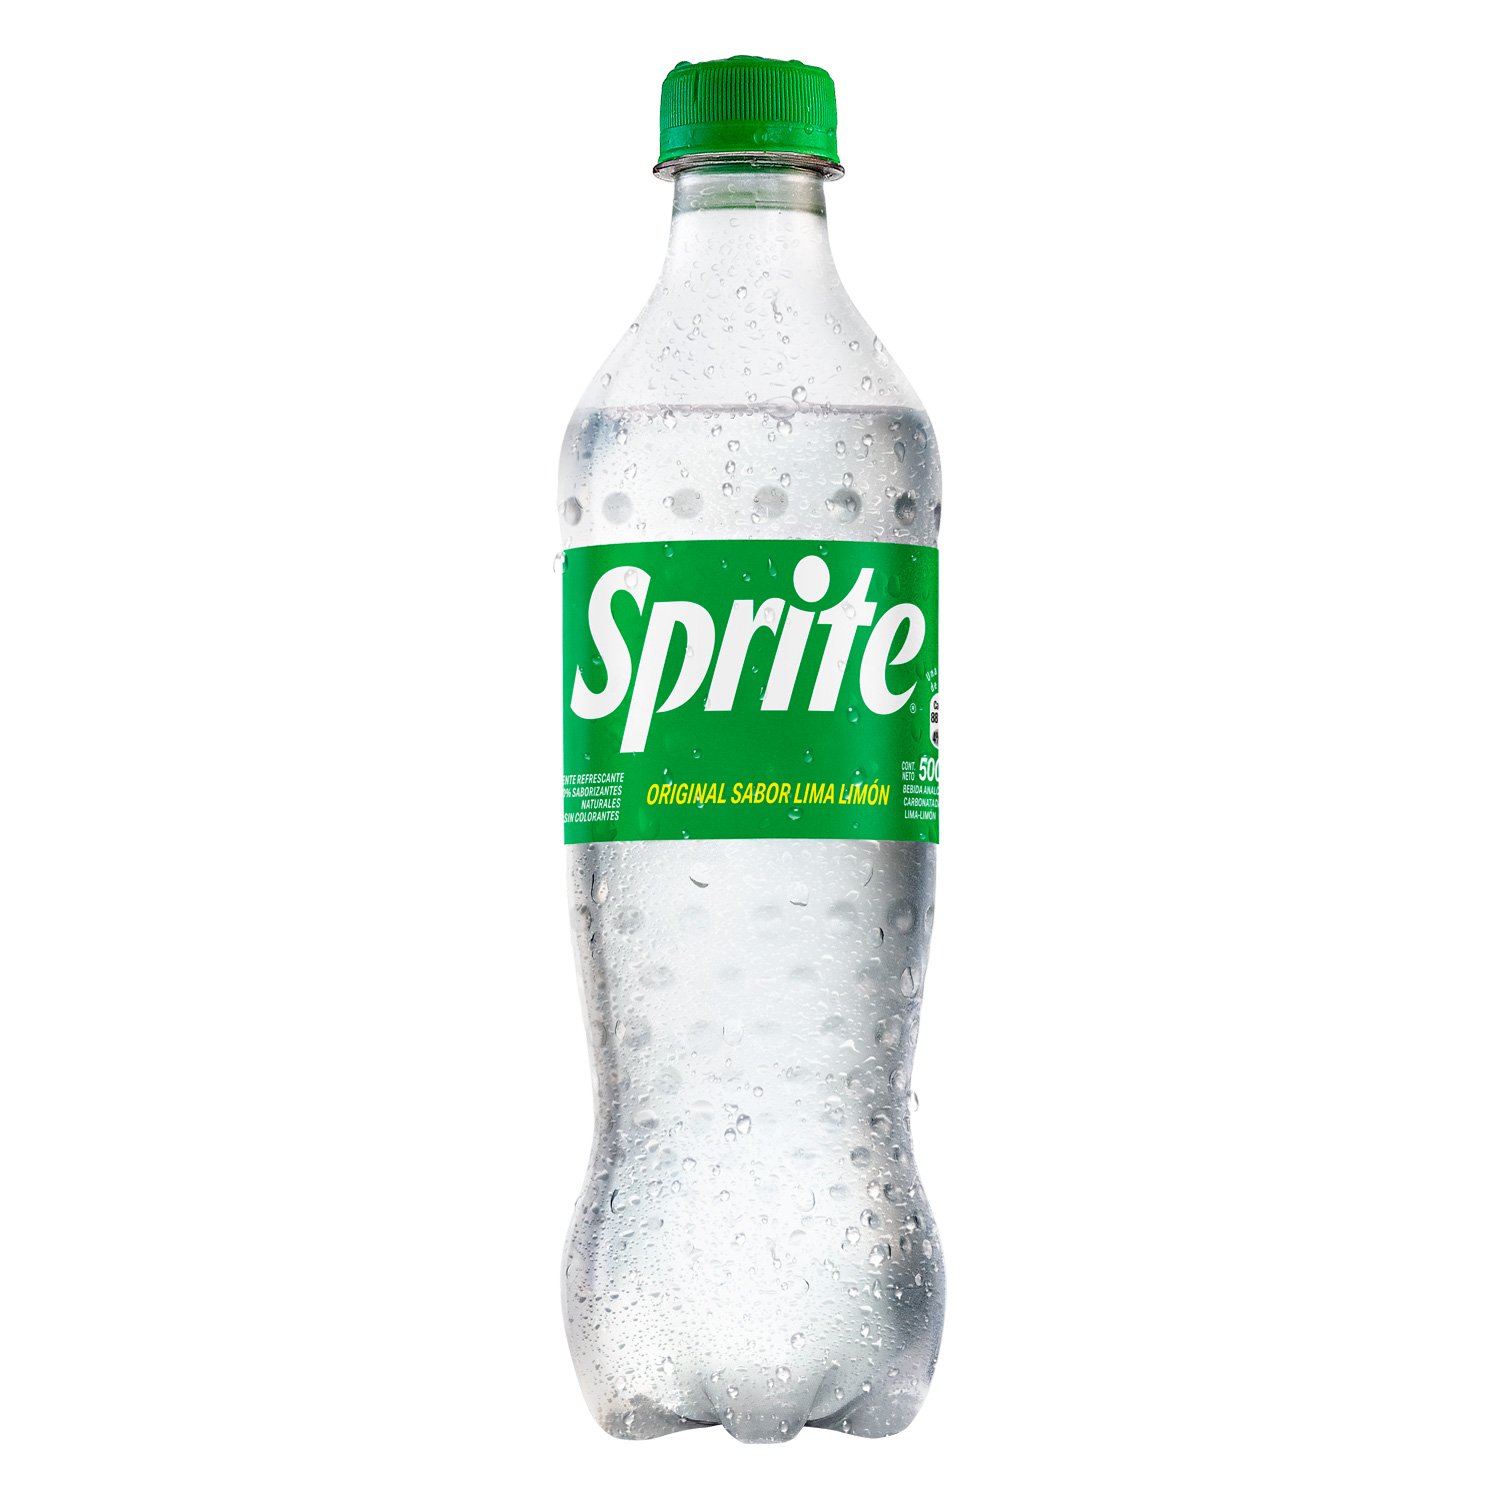 Botella de Sprite